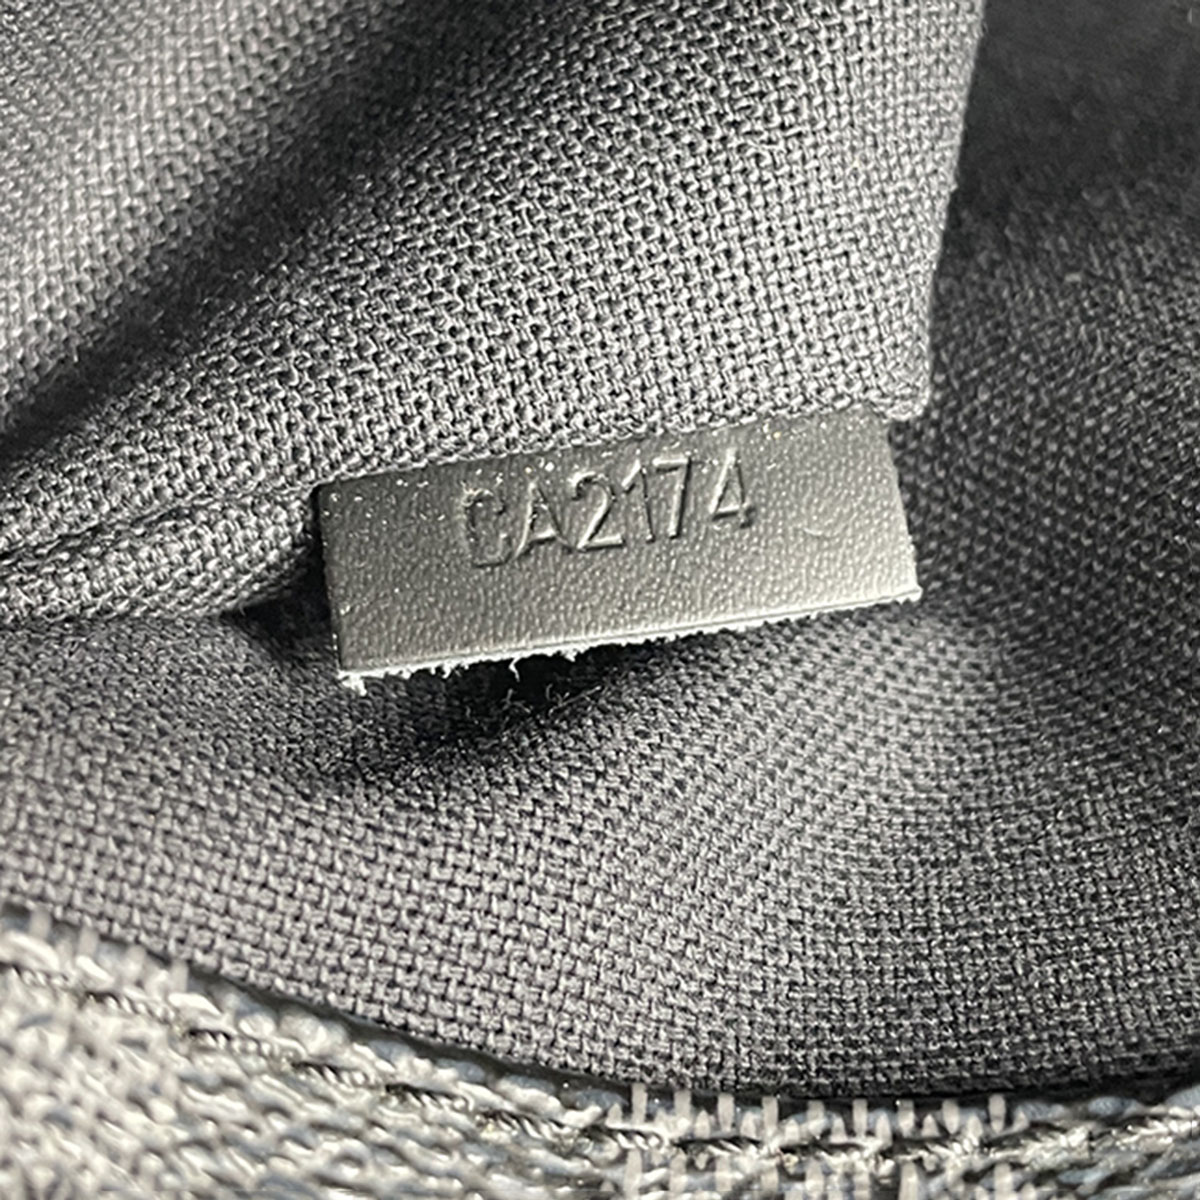 Louis Vuitton Damier Graphite District MM Leather Fabric Black Shoulder bag  712